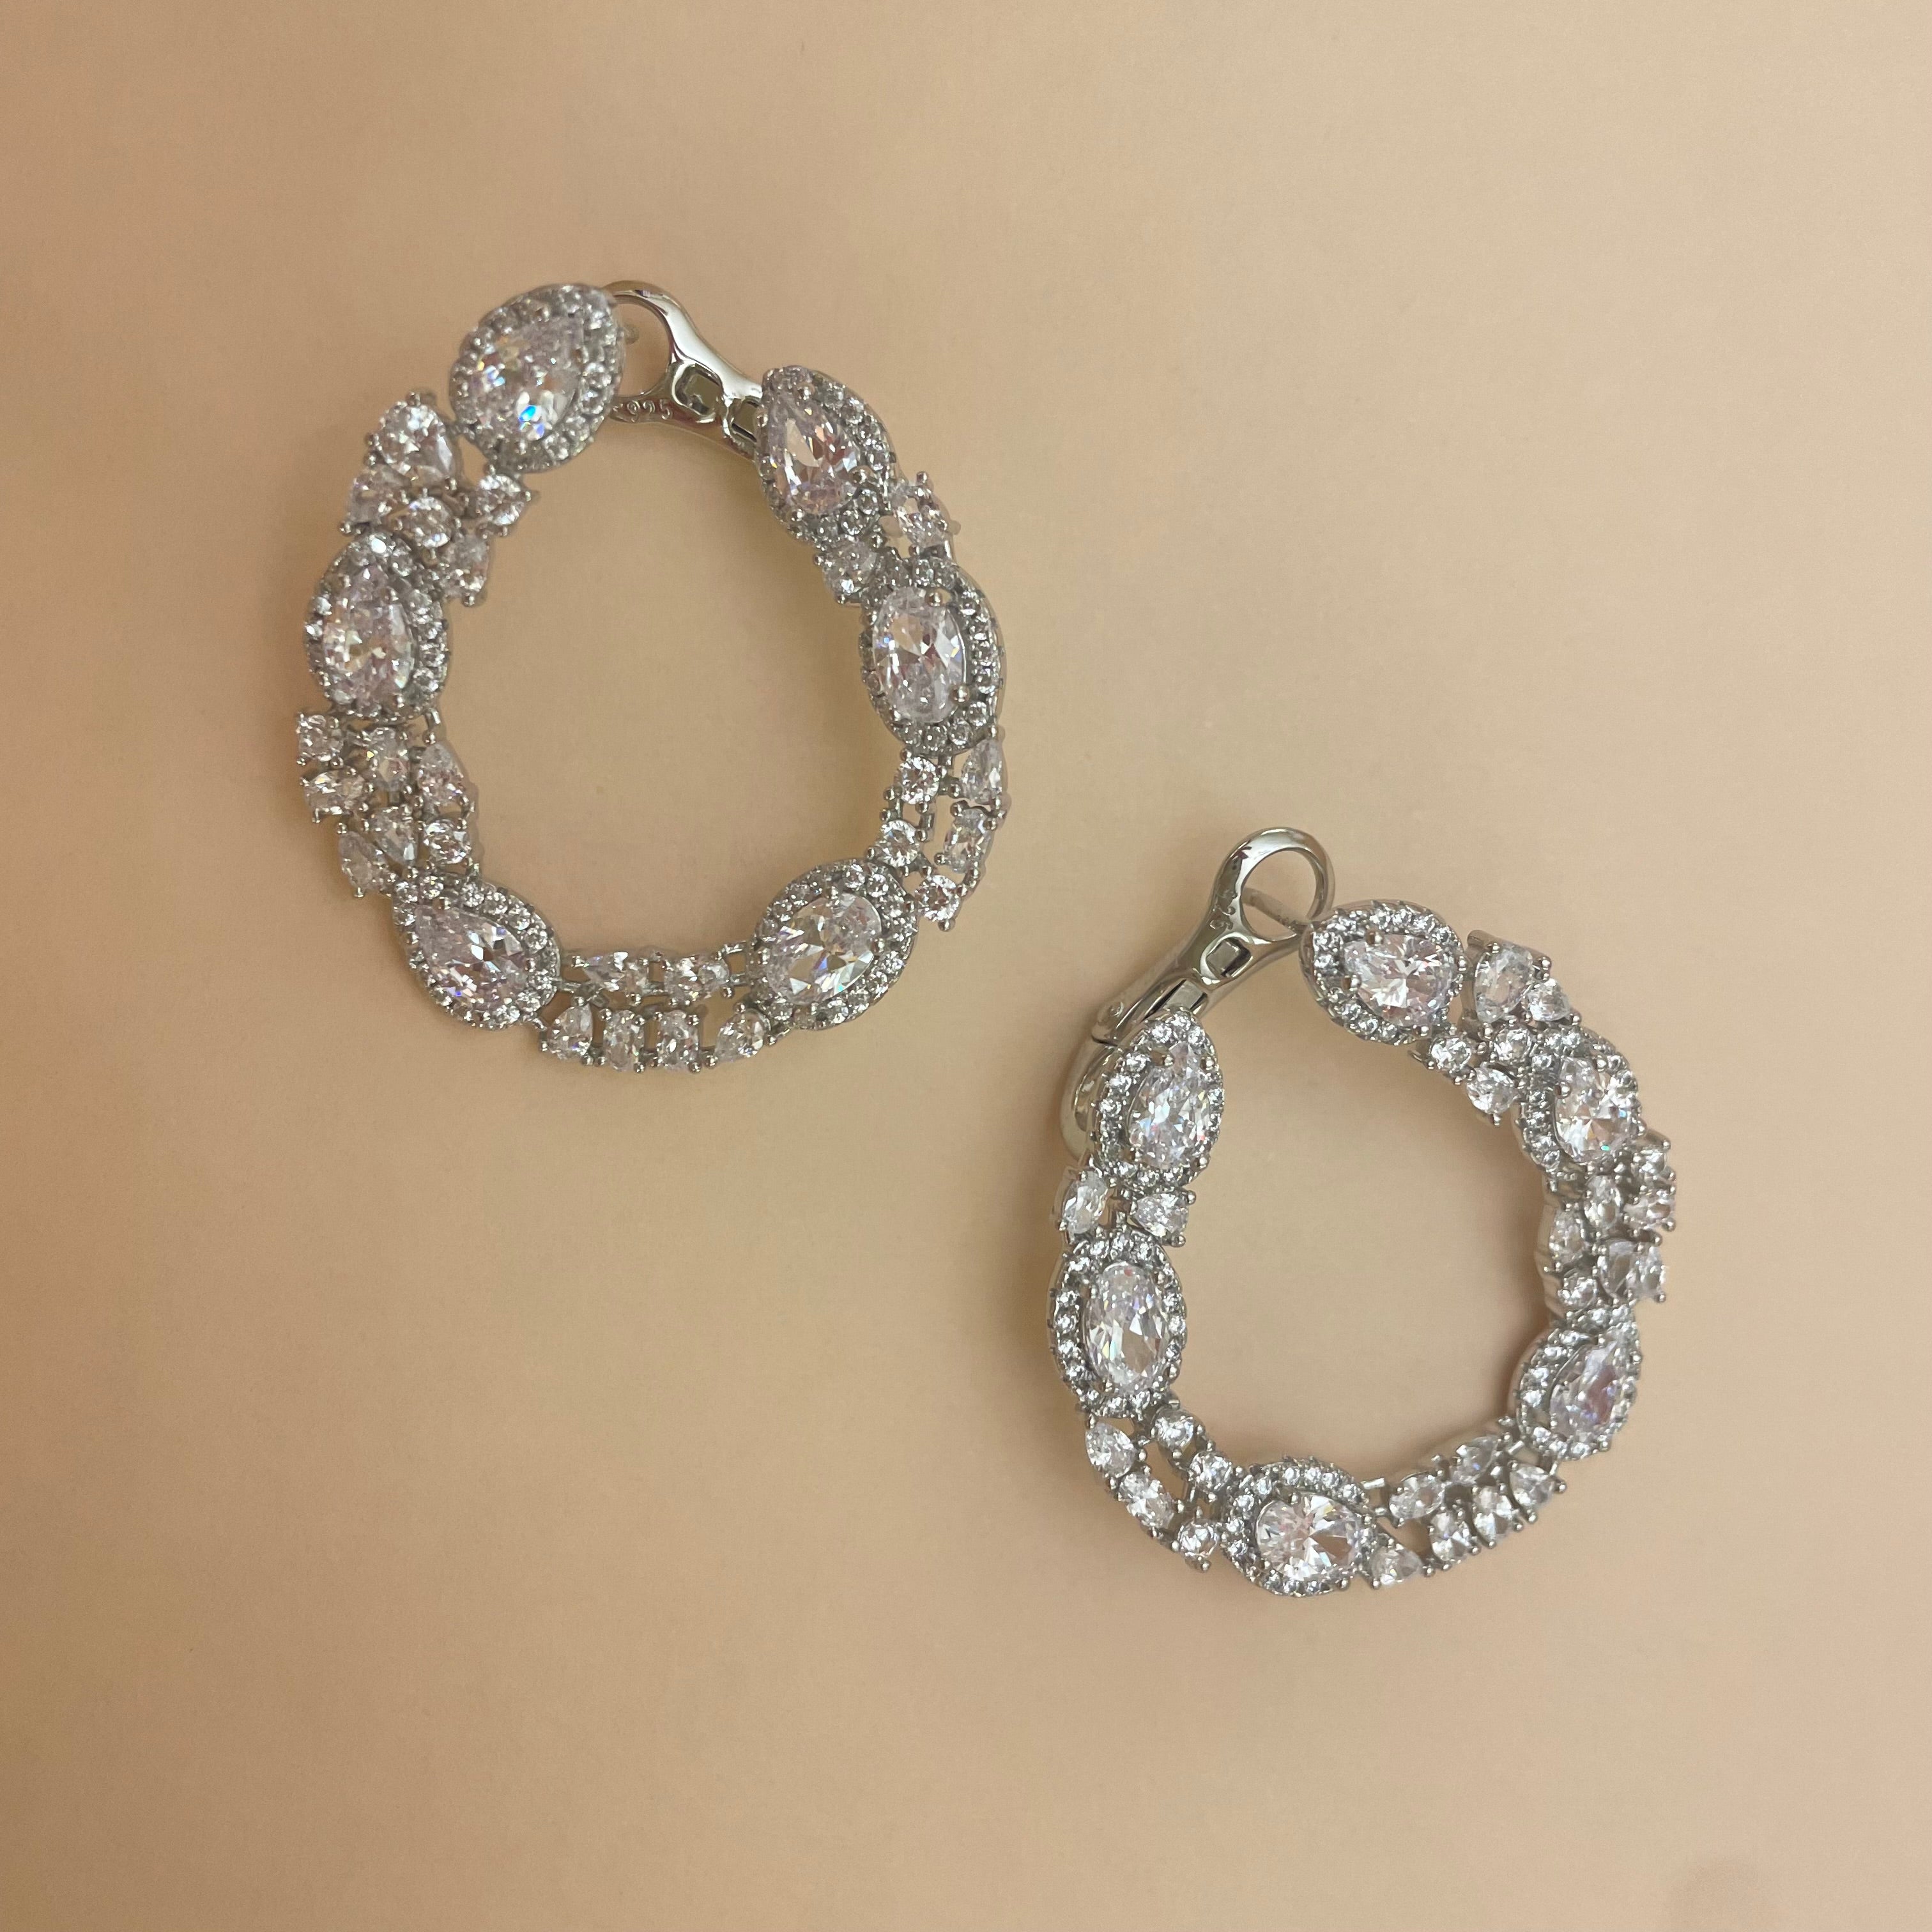 Elegant stud earrings